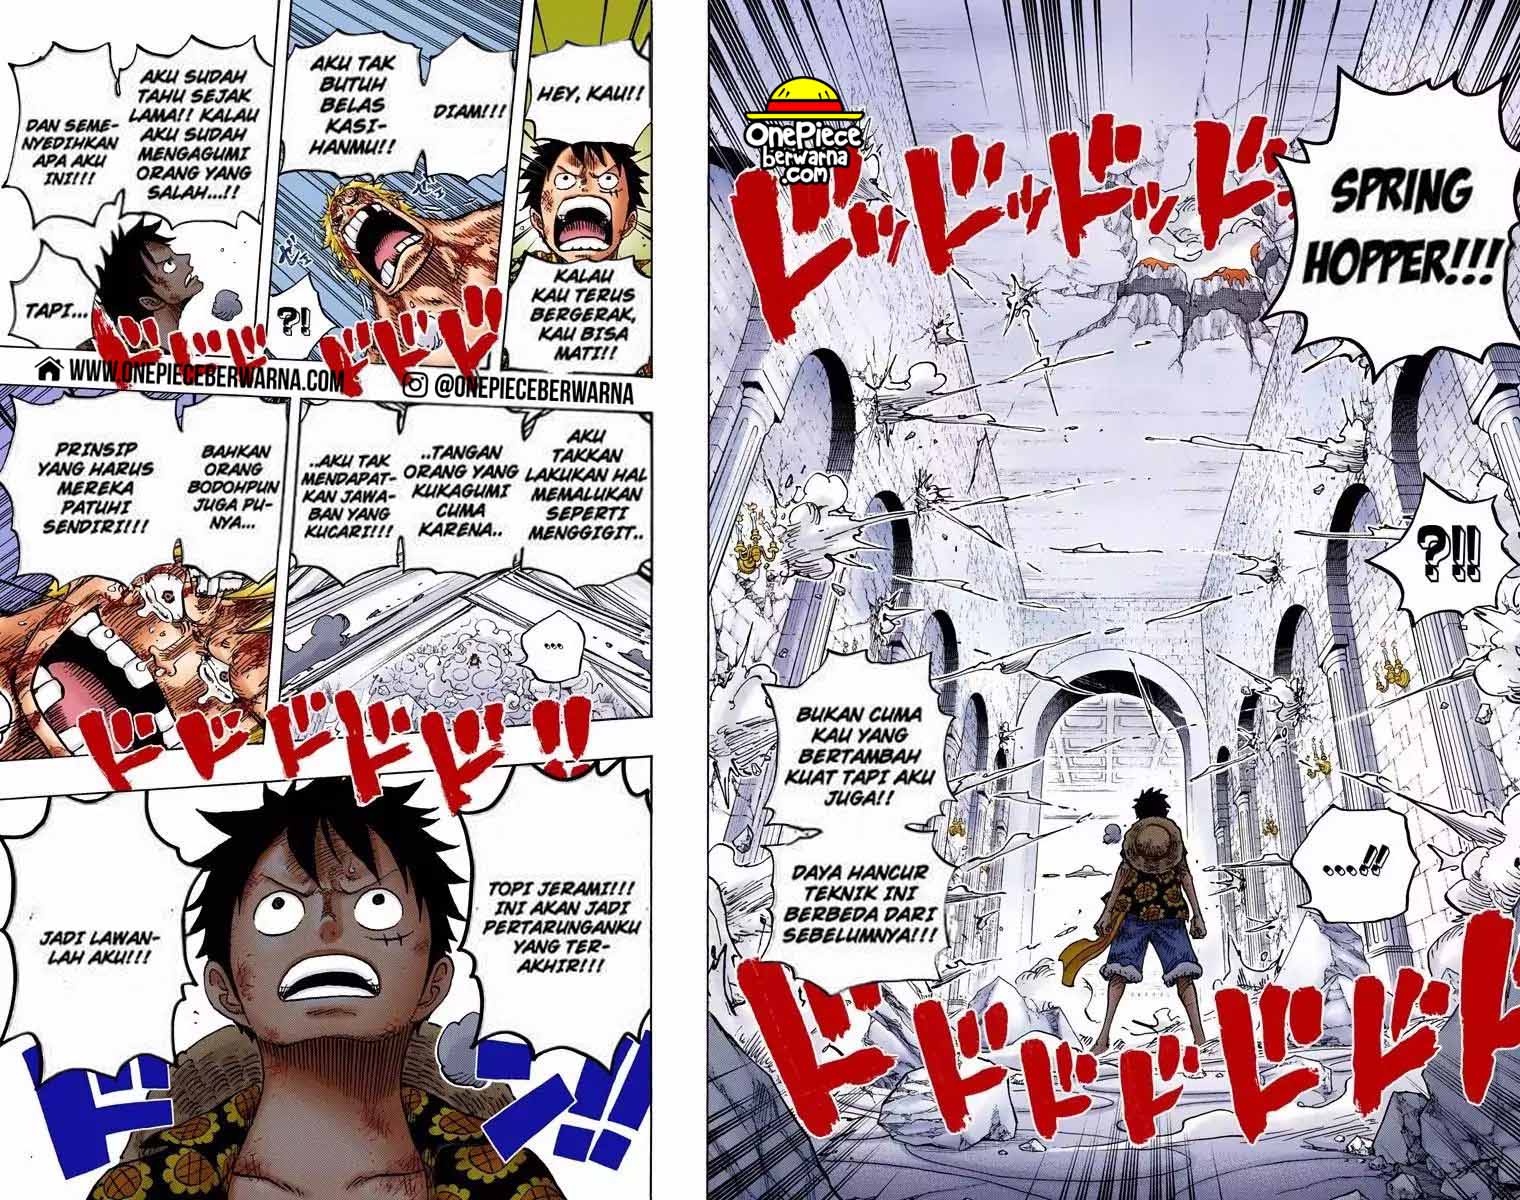 One Piece Berwarna Chapter 769